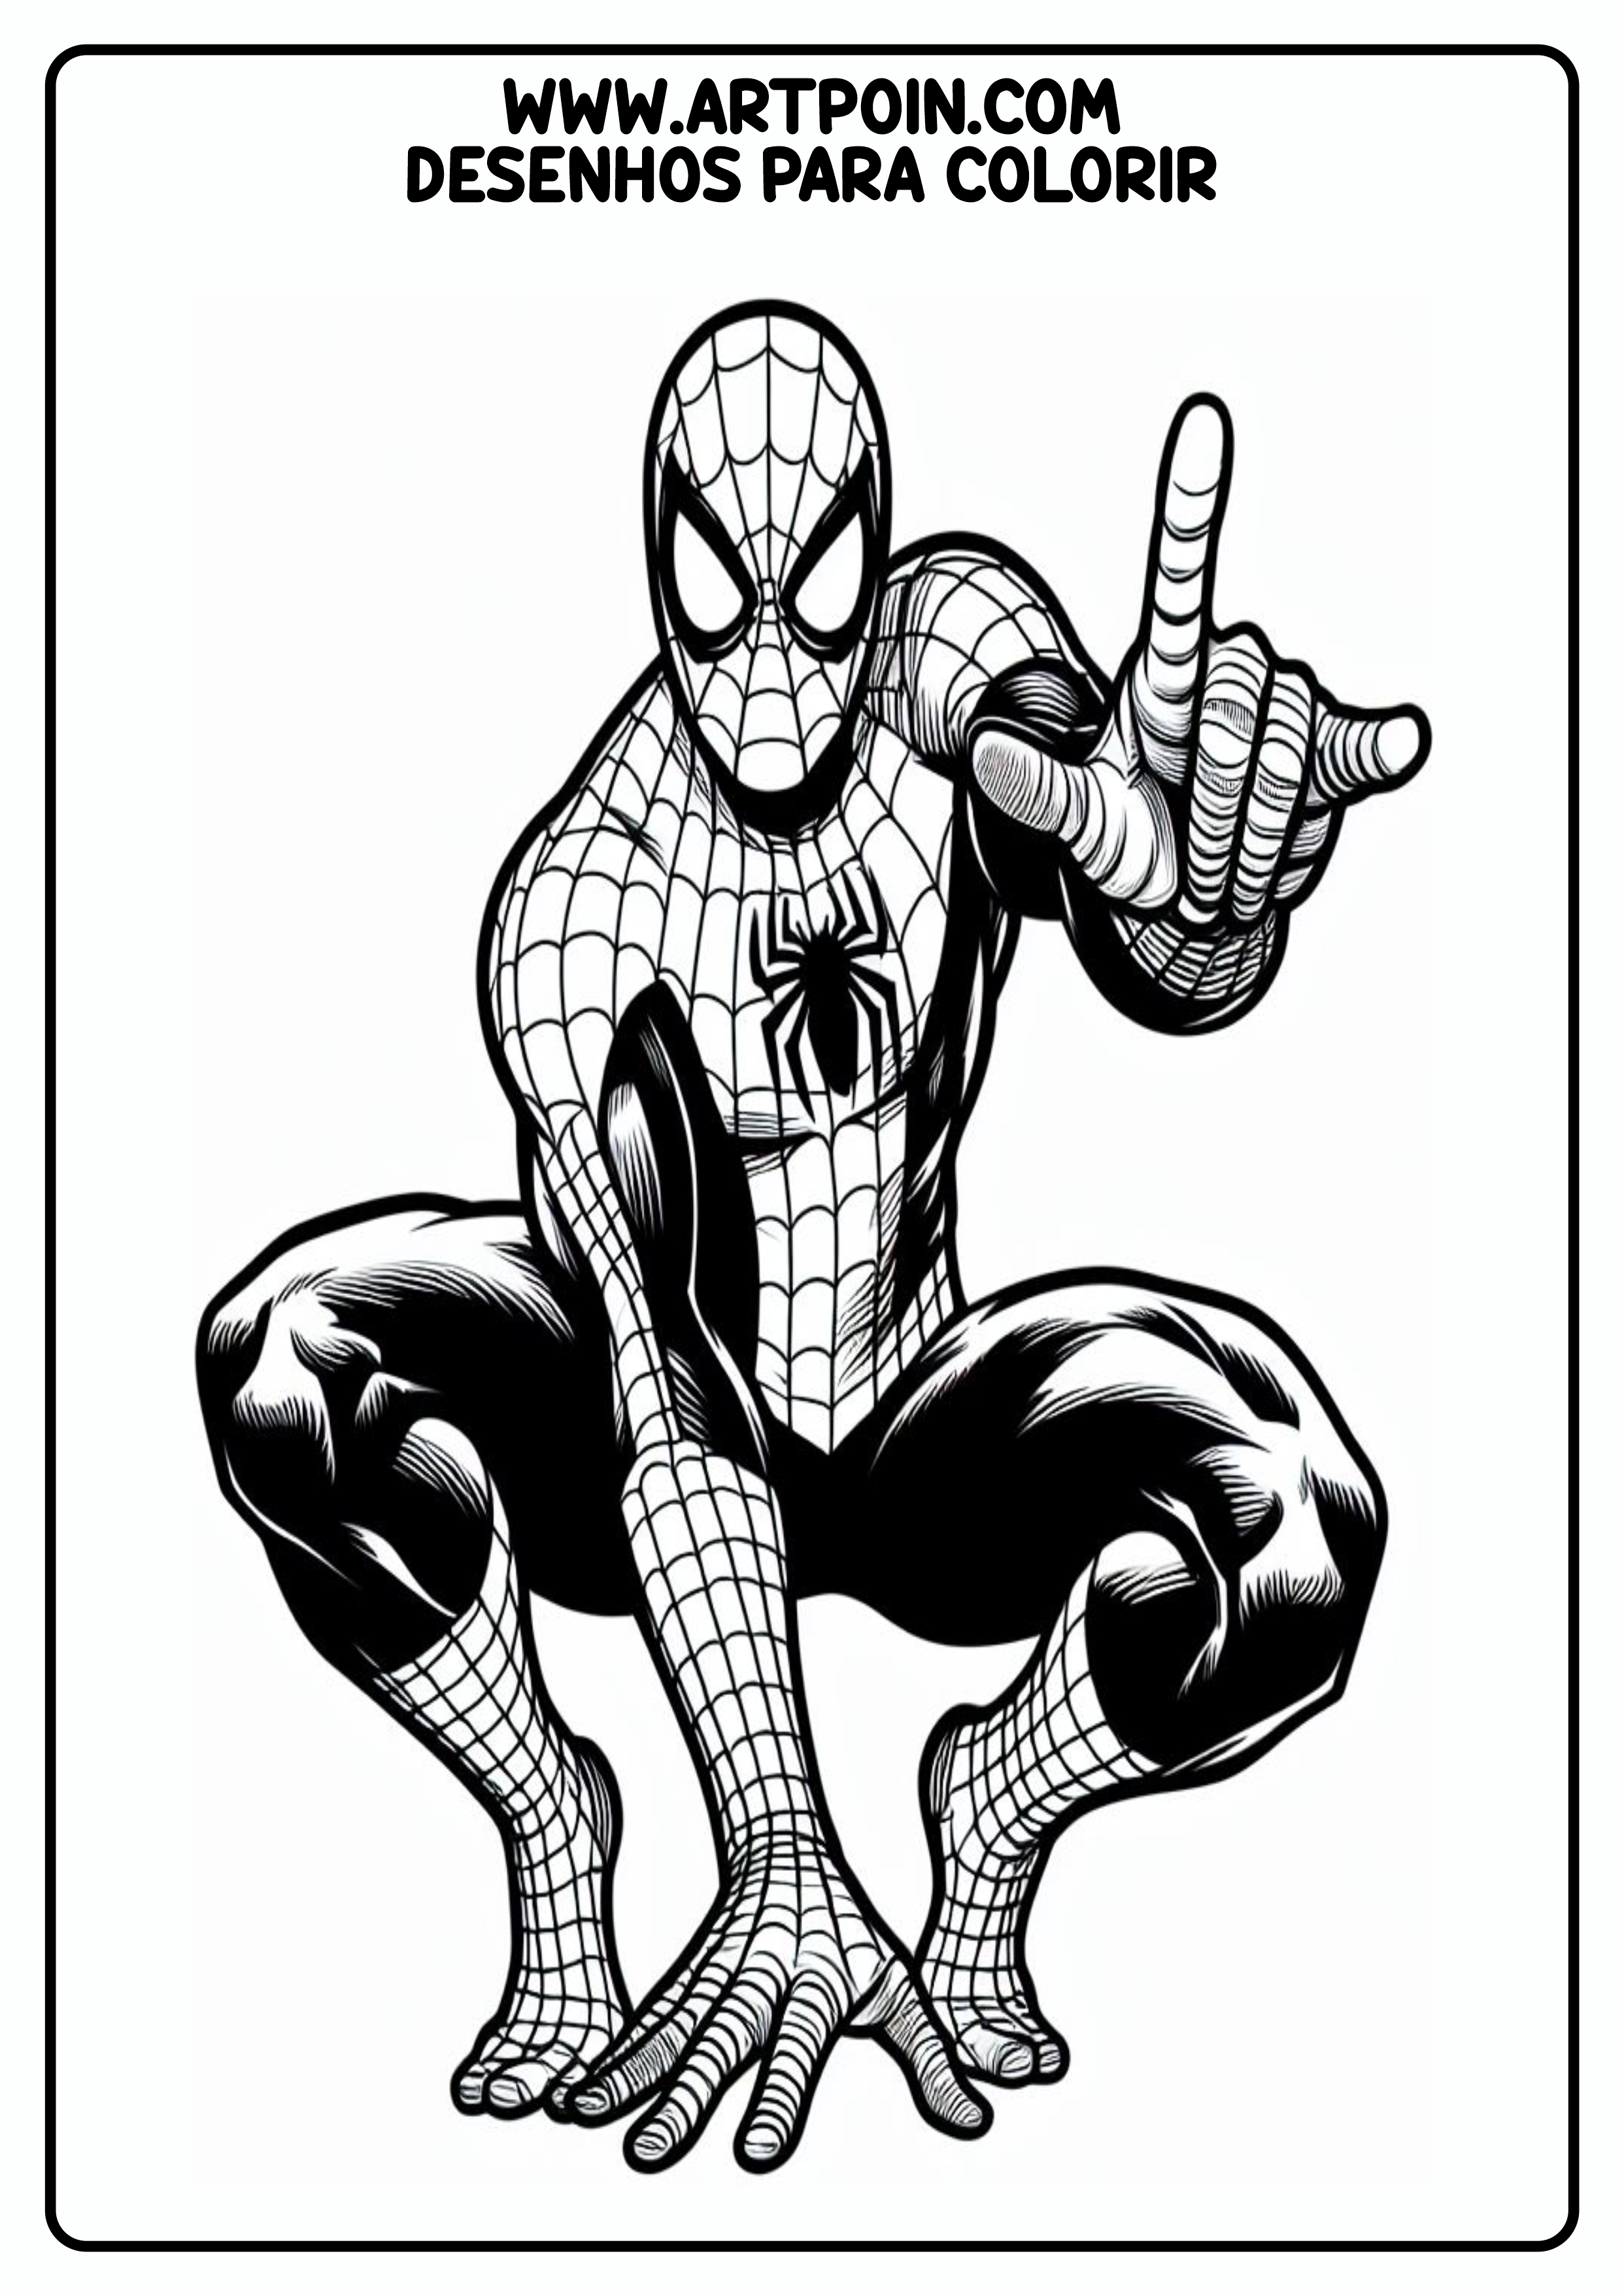 Desenho para colorir homem-aranha super herói Marvel artes gráficas para pintar atividade png